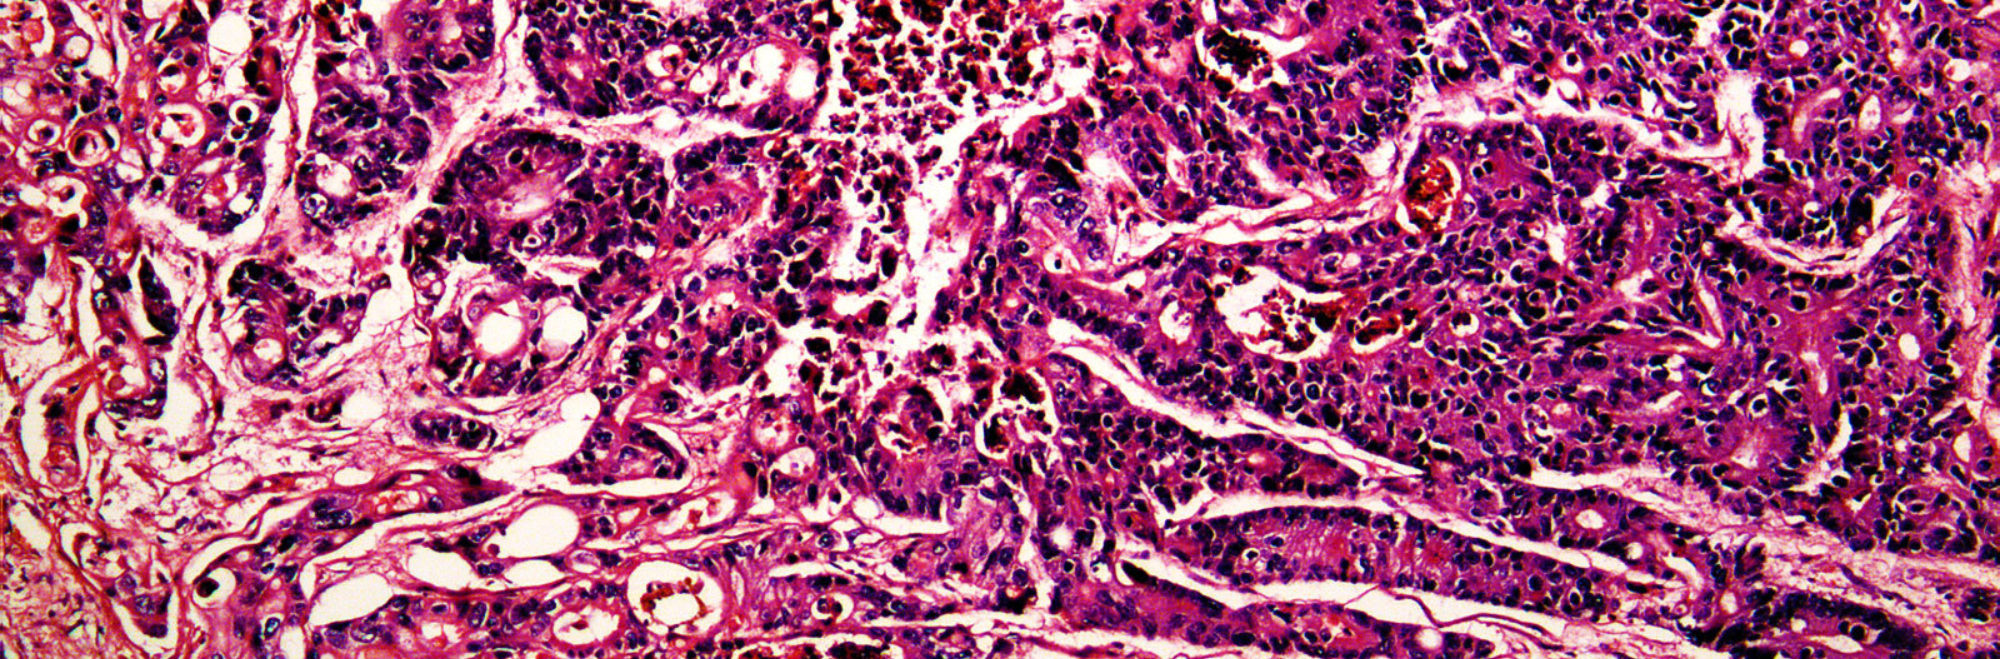 Pathology liver cancer slide